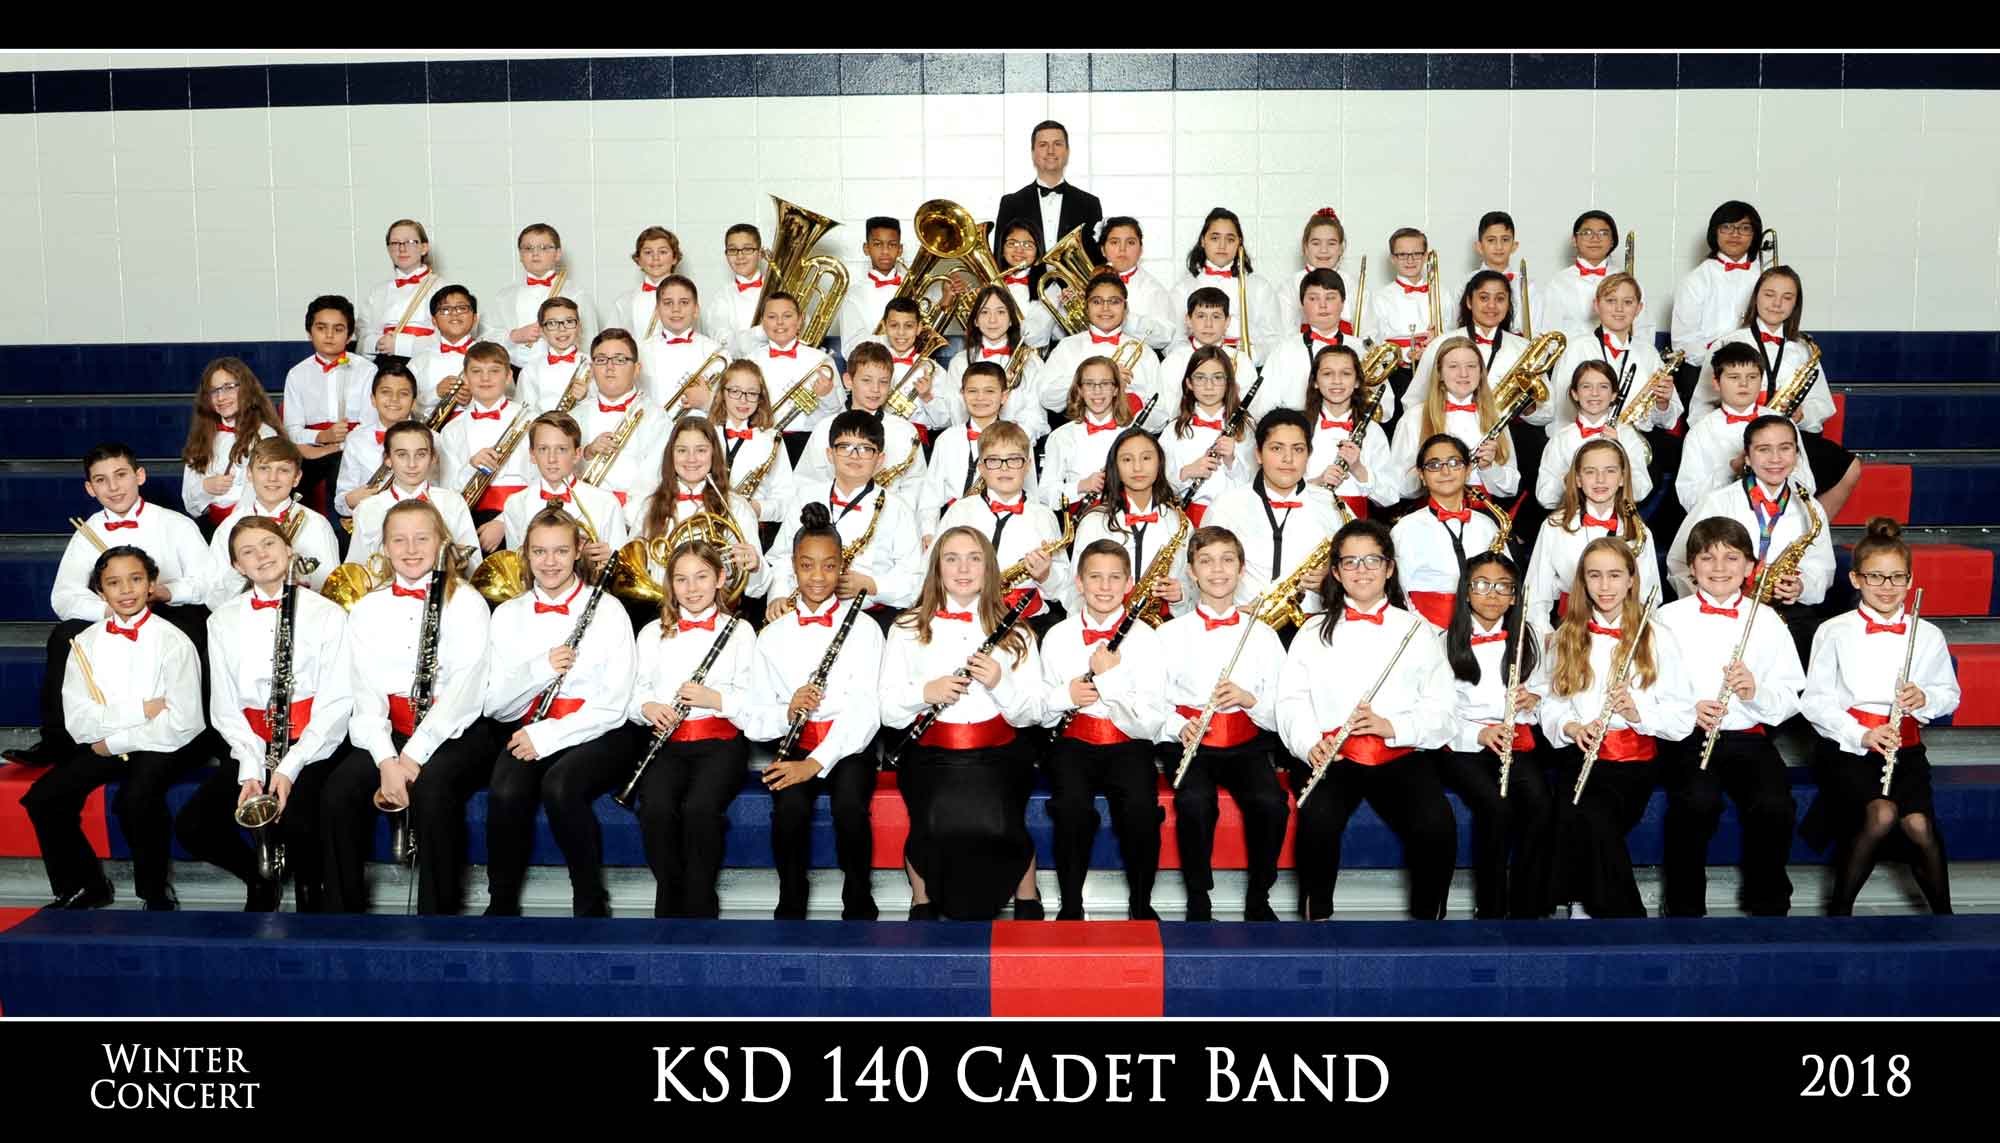 KSD Cadet Band Group Photo by Tom Killoran